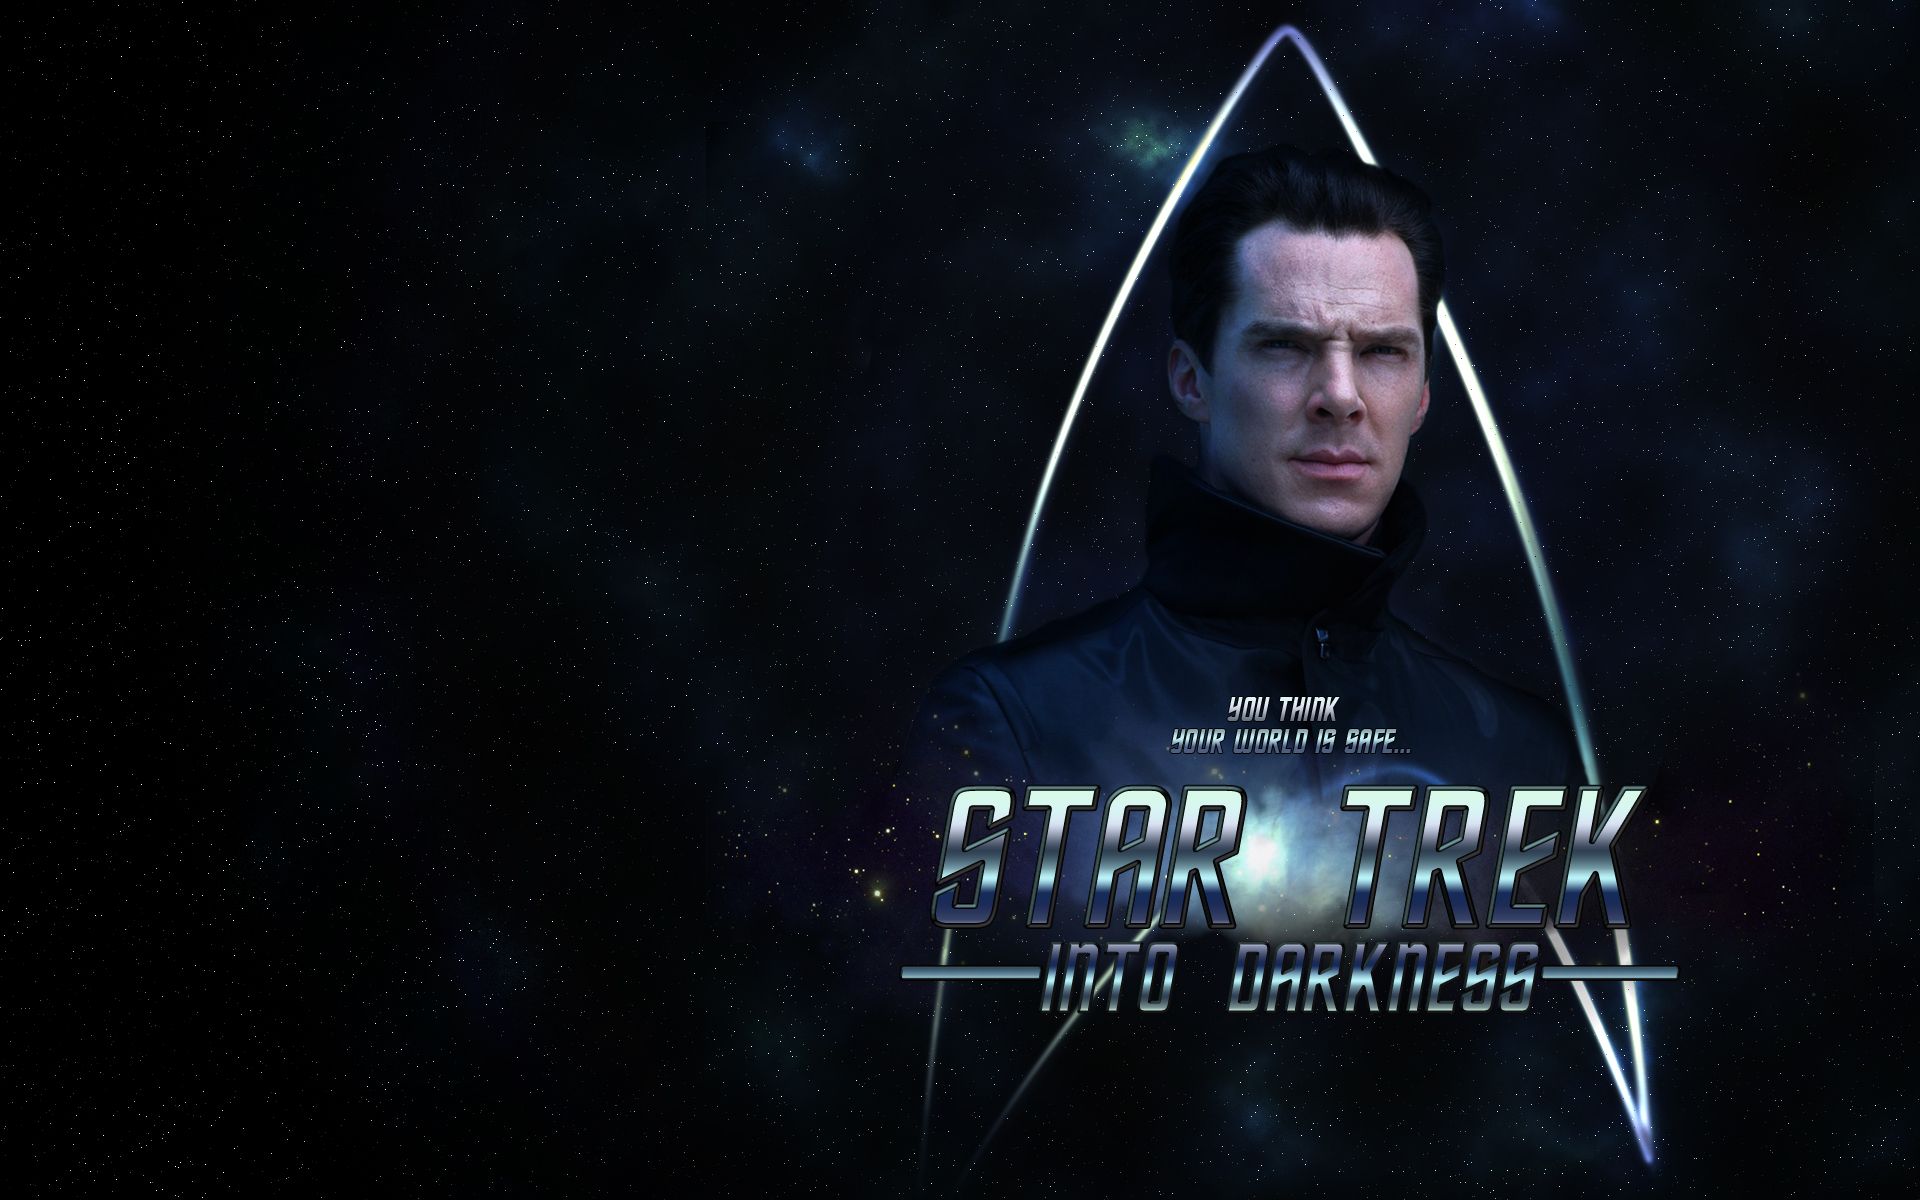 Star Trek Wallpaper: Star Trek Into Darkness wallpaper. Star trek wallpaper, Star trek into darkness, Star trek movies